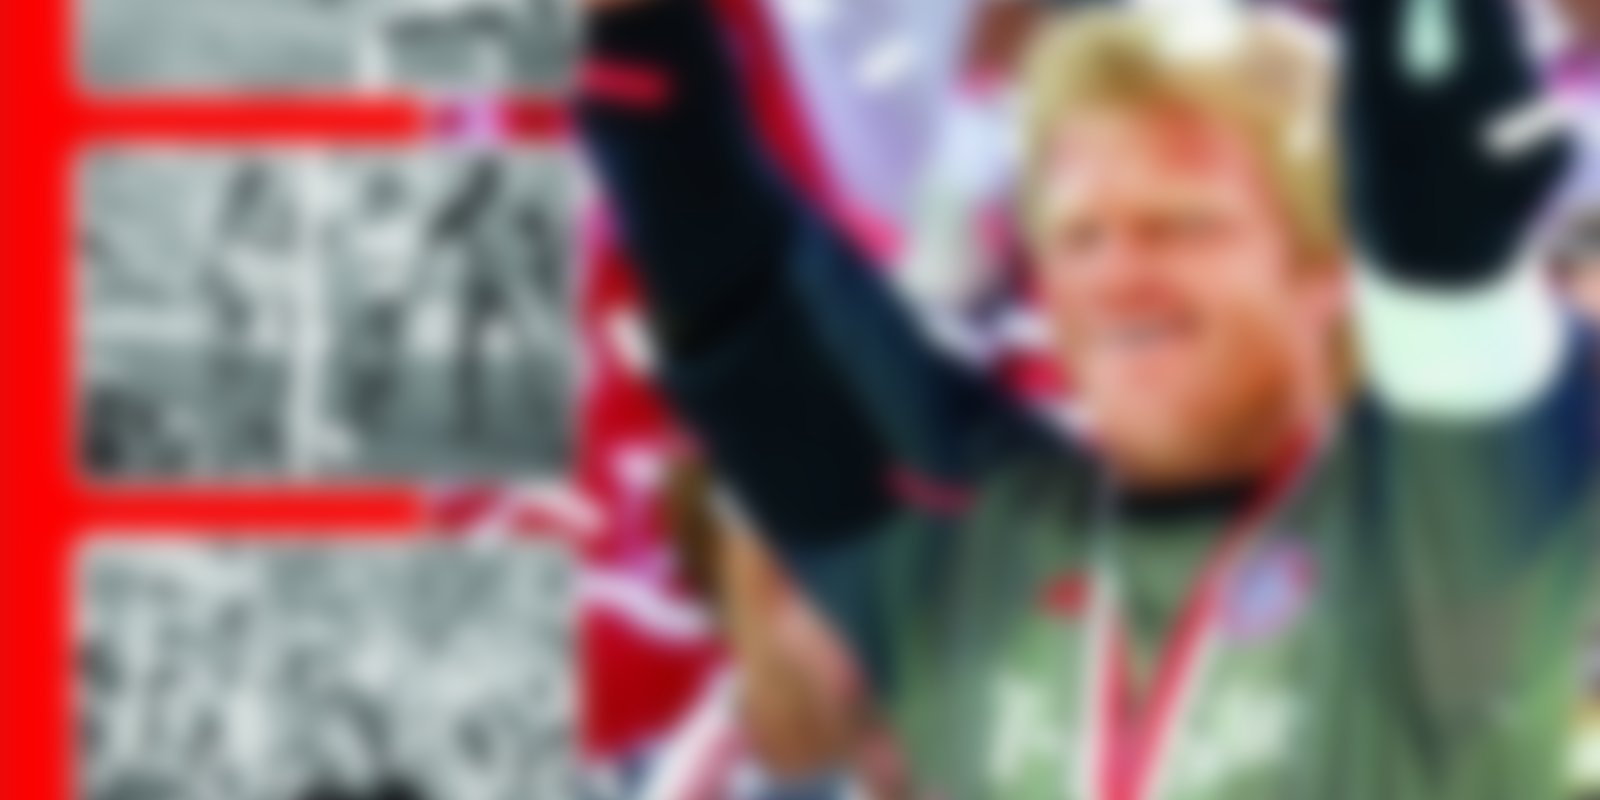 40 Jahre Bundesliga